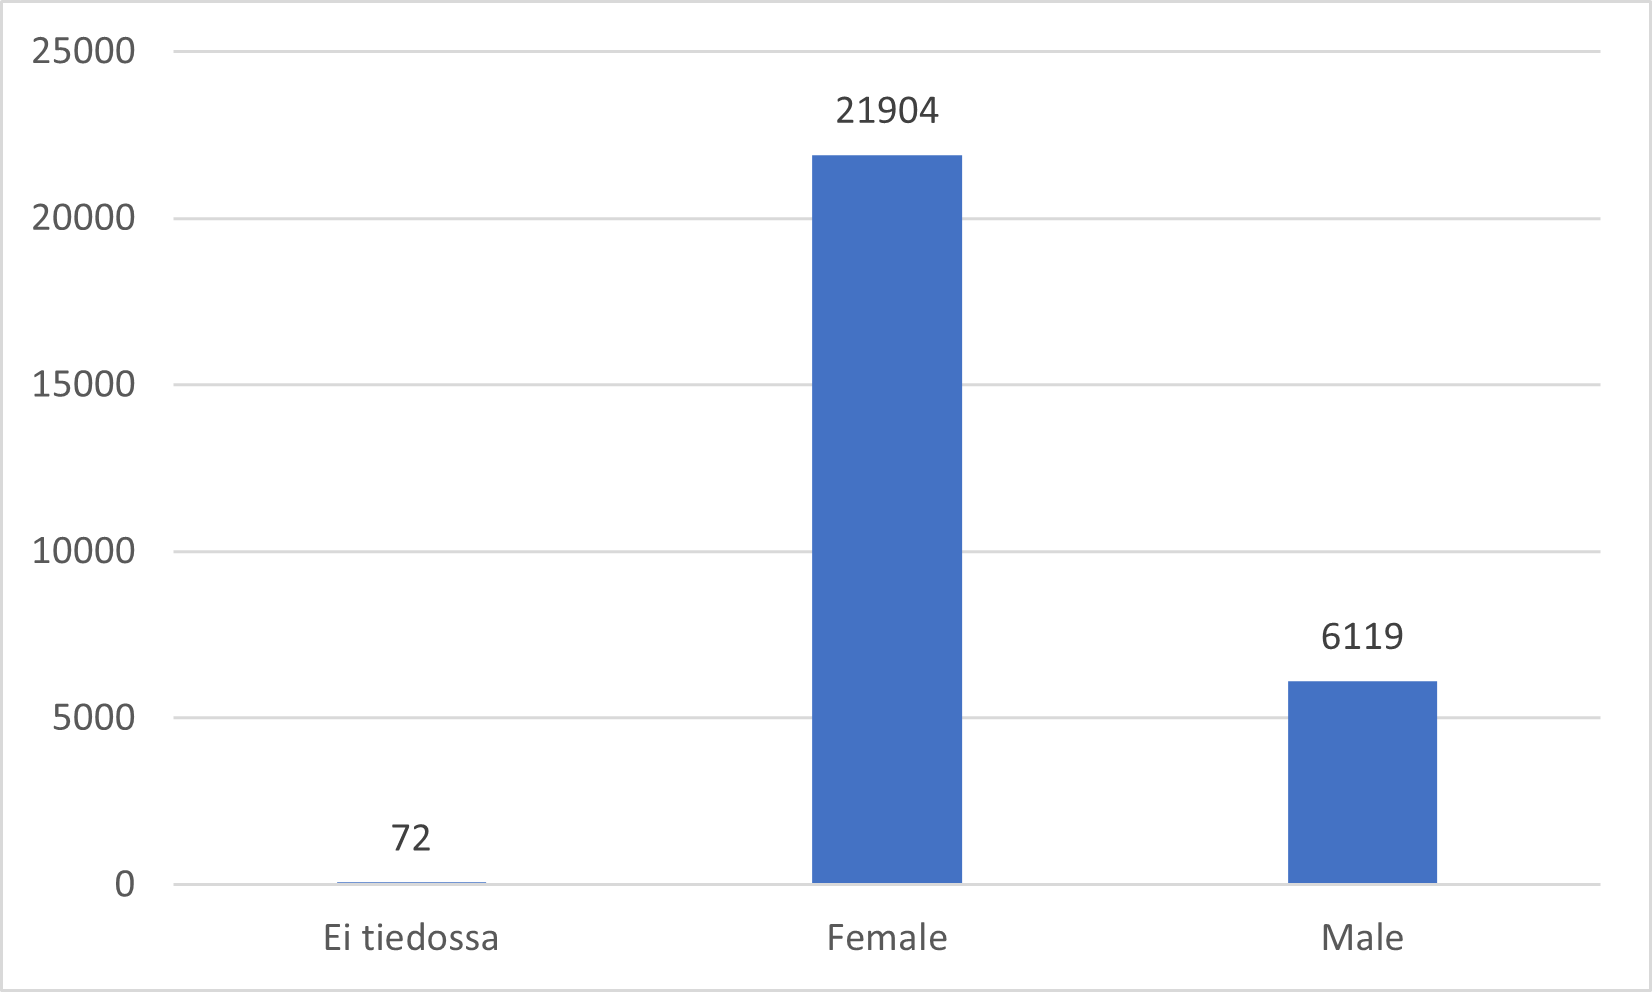 Ilmoitusten potilaiden sukupuolijakauma: ei tiedossa 72, nainen 21904, mies 6119.